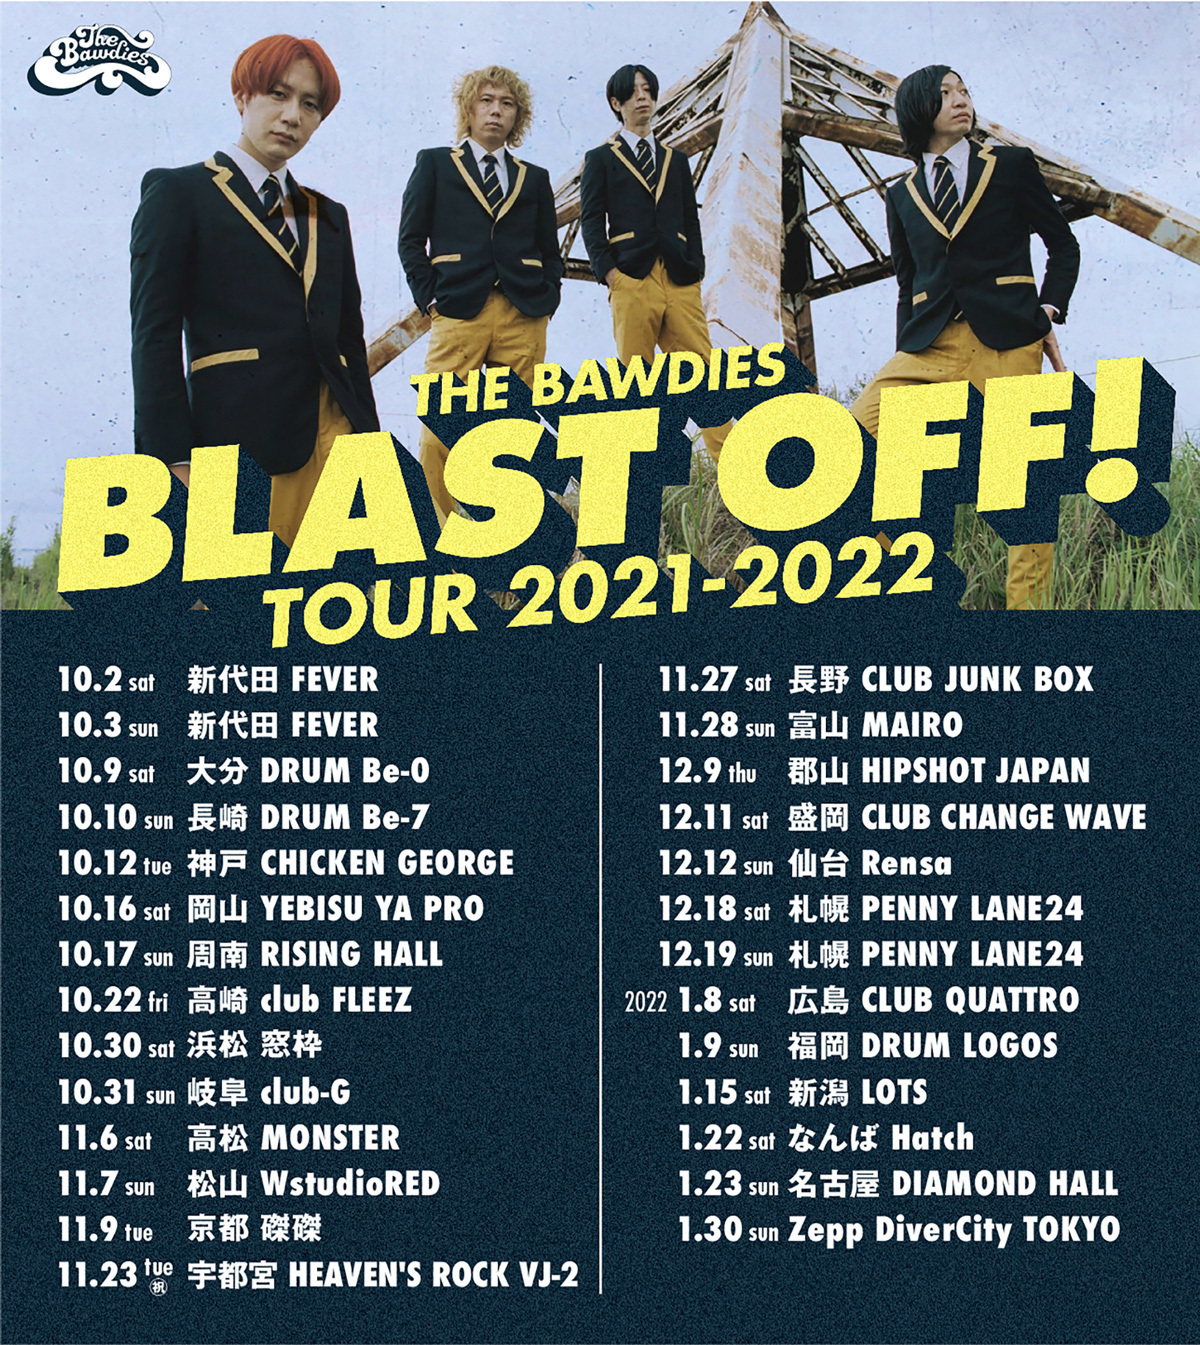 全国へ再び飛び立つ！「BLAST OFF! TOUR 2021-2022」のプレイガイド最速先行が開始！